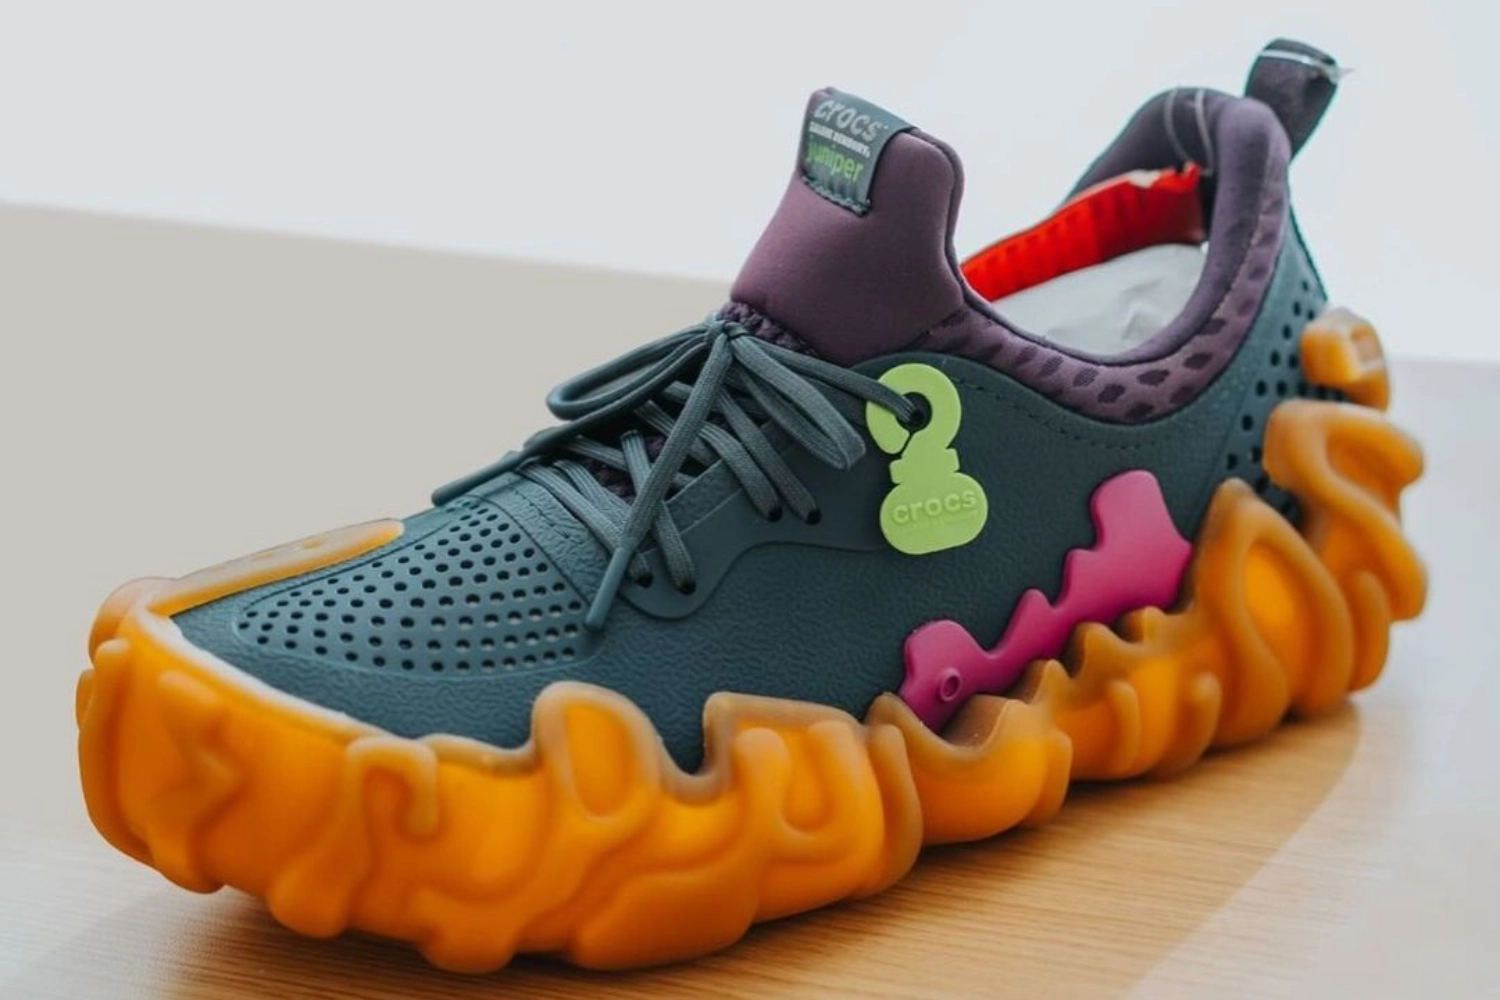 Salehe Bembury zeigt neuen Colorway für Crocs ersten Sneaker Juniper